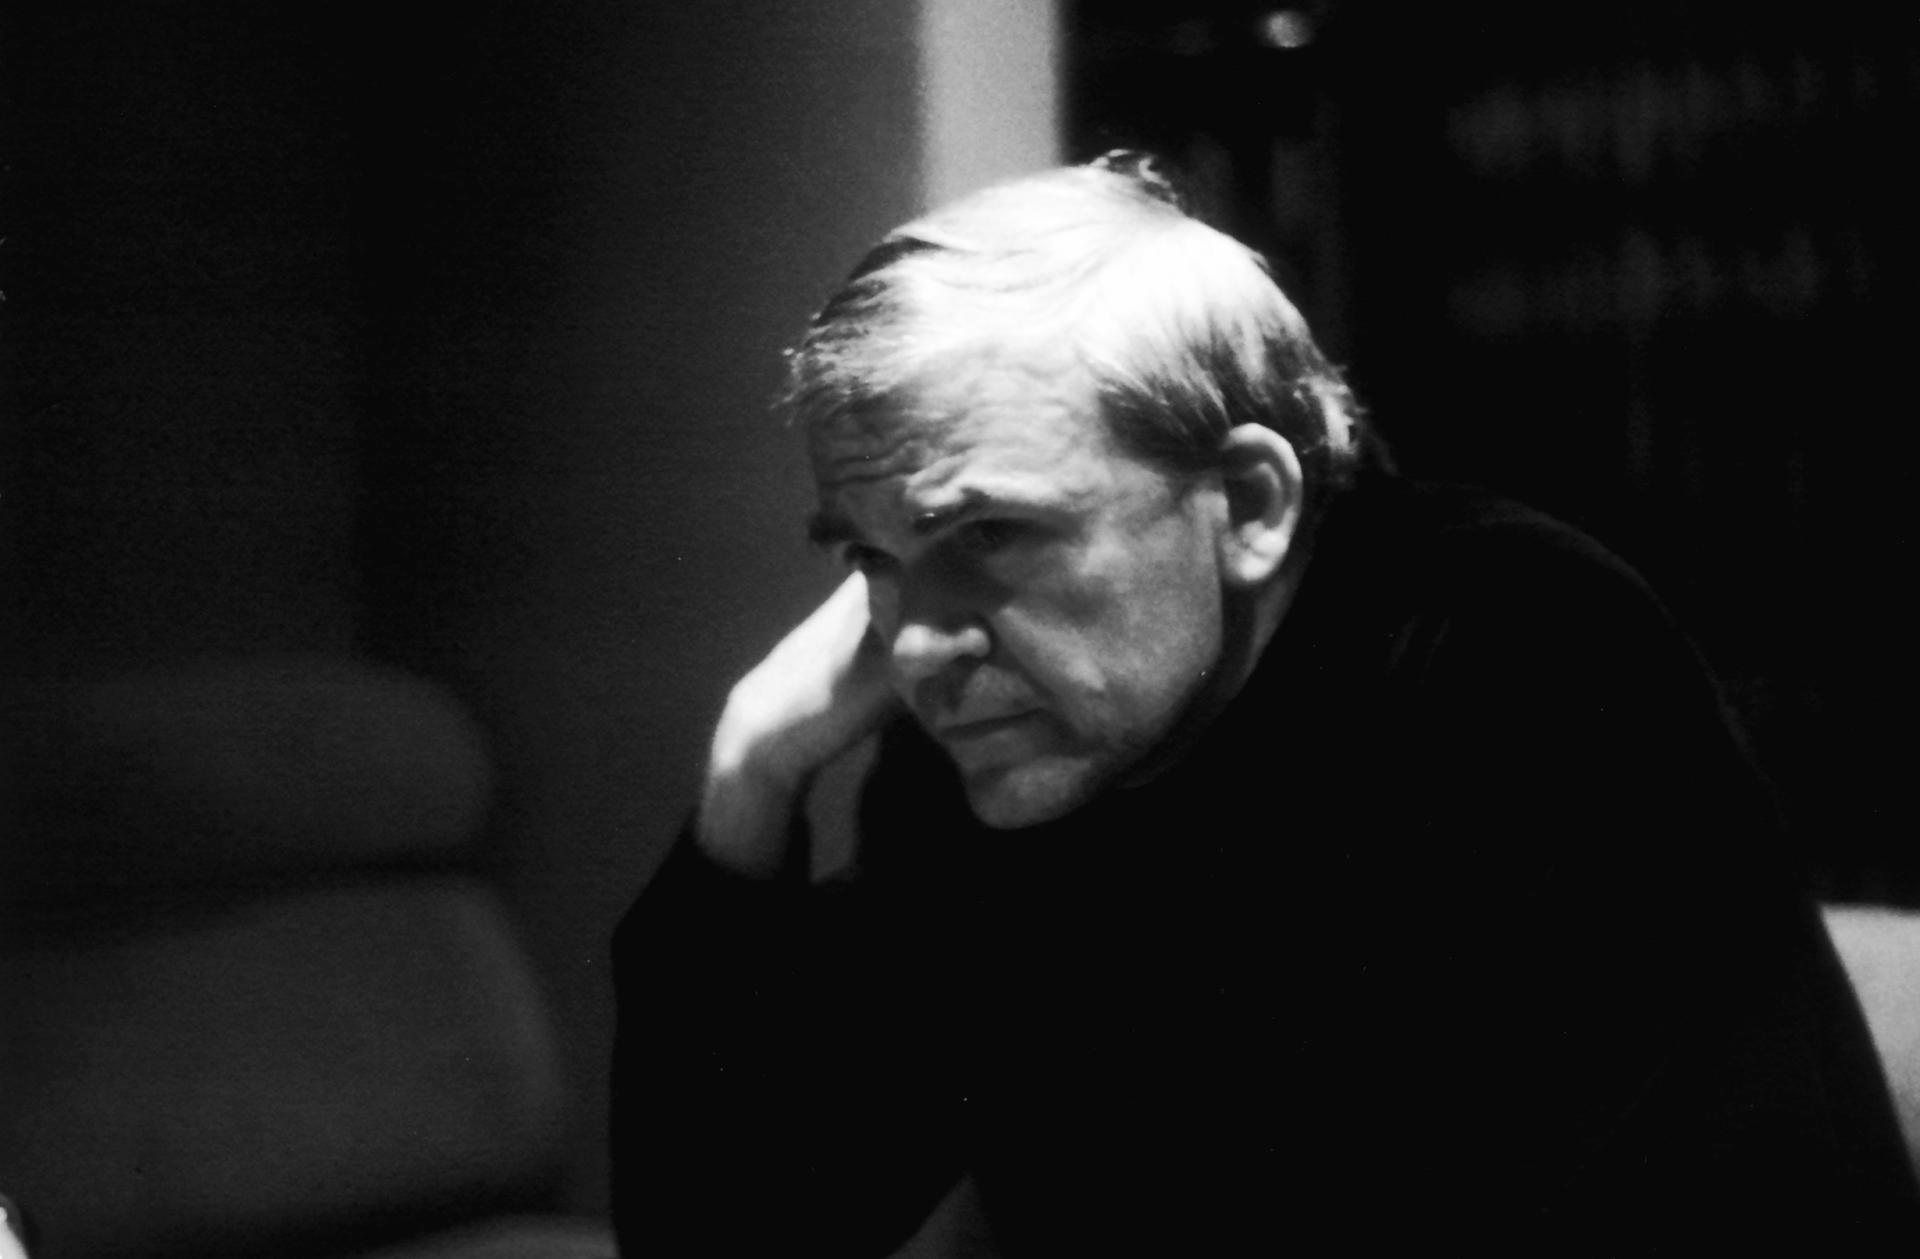 Zomrel Milan Kundera, český spisovateľ svetového významu. Mal 94 rokov